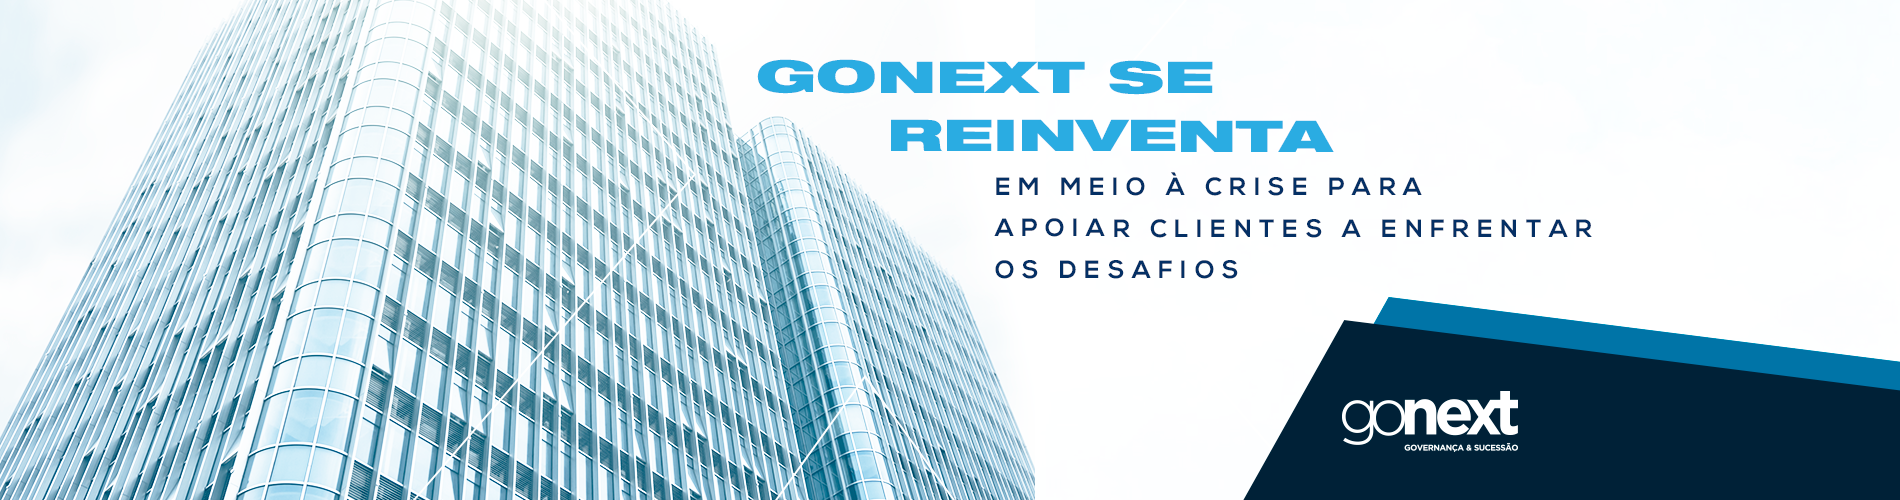 GoNext se reinventa em meio à crise para apoiar clientes a enfrentar os desafios